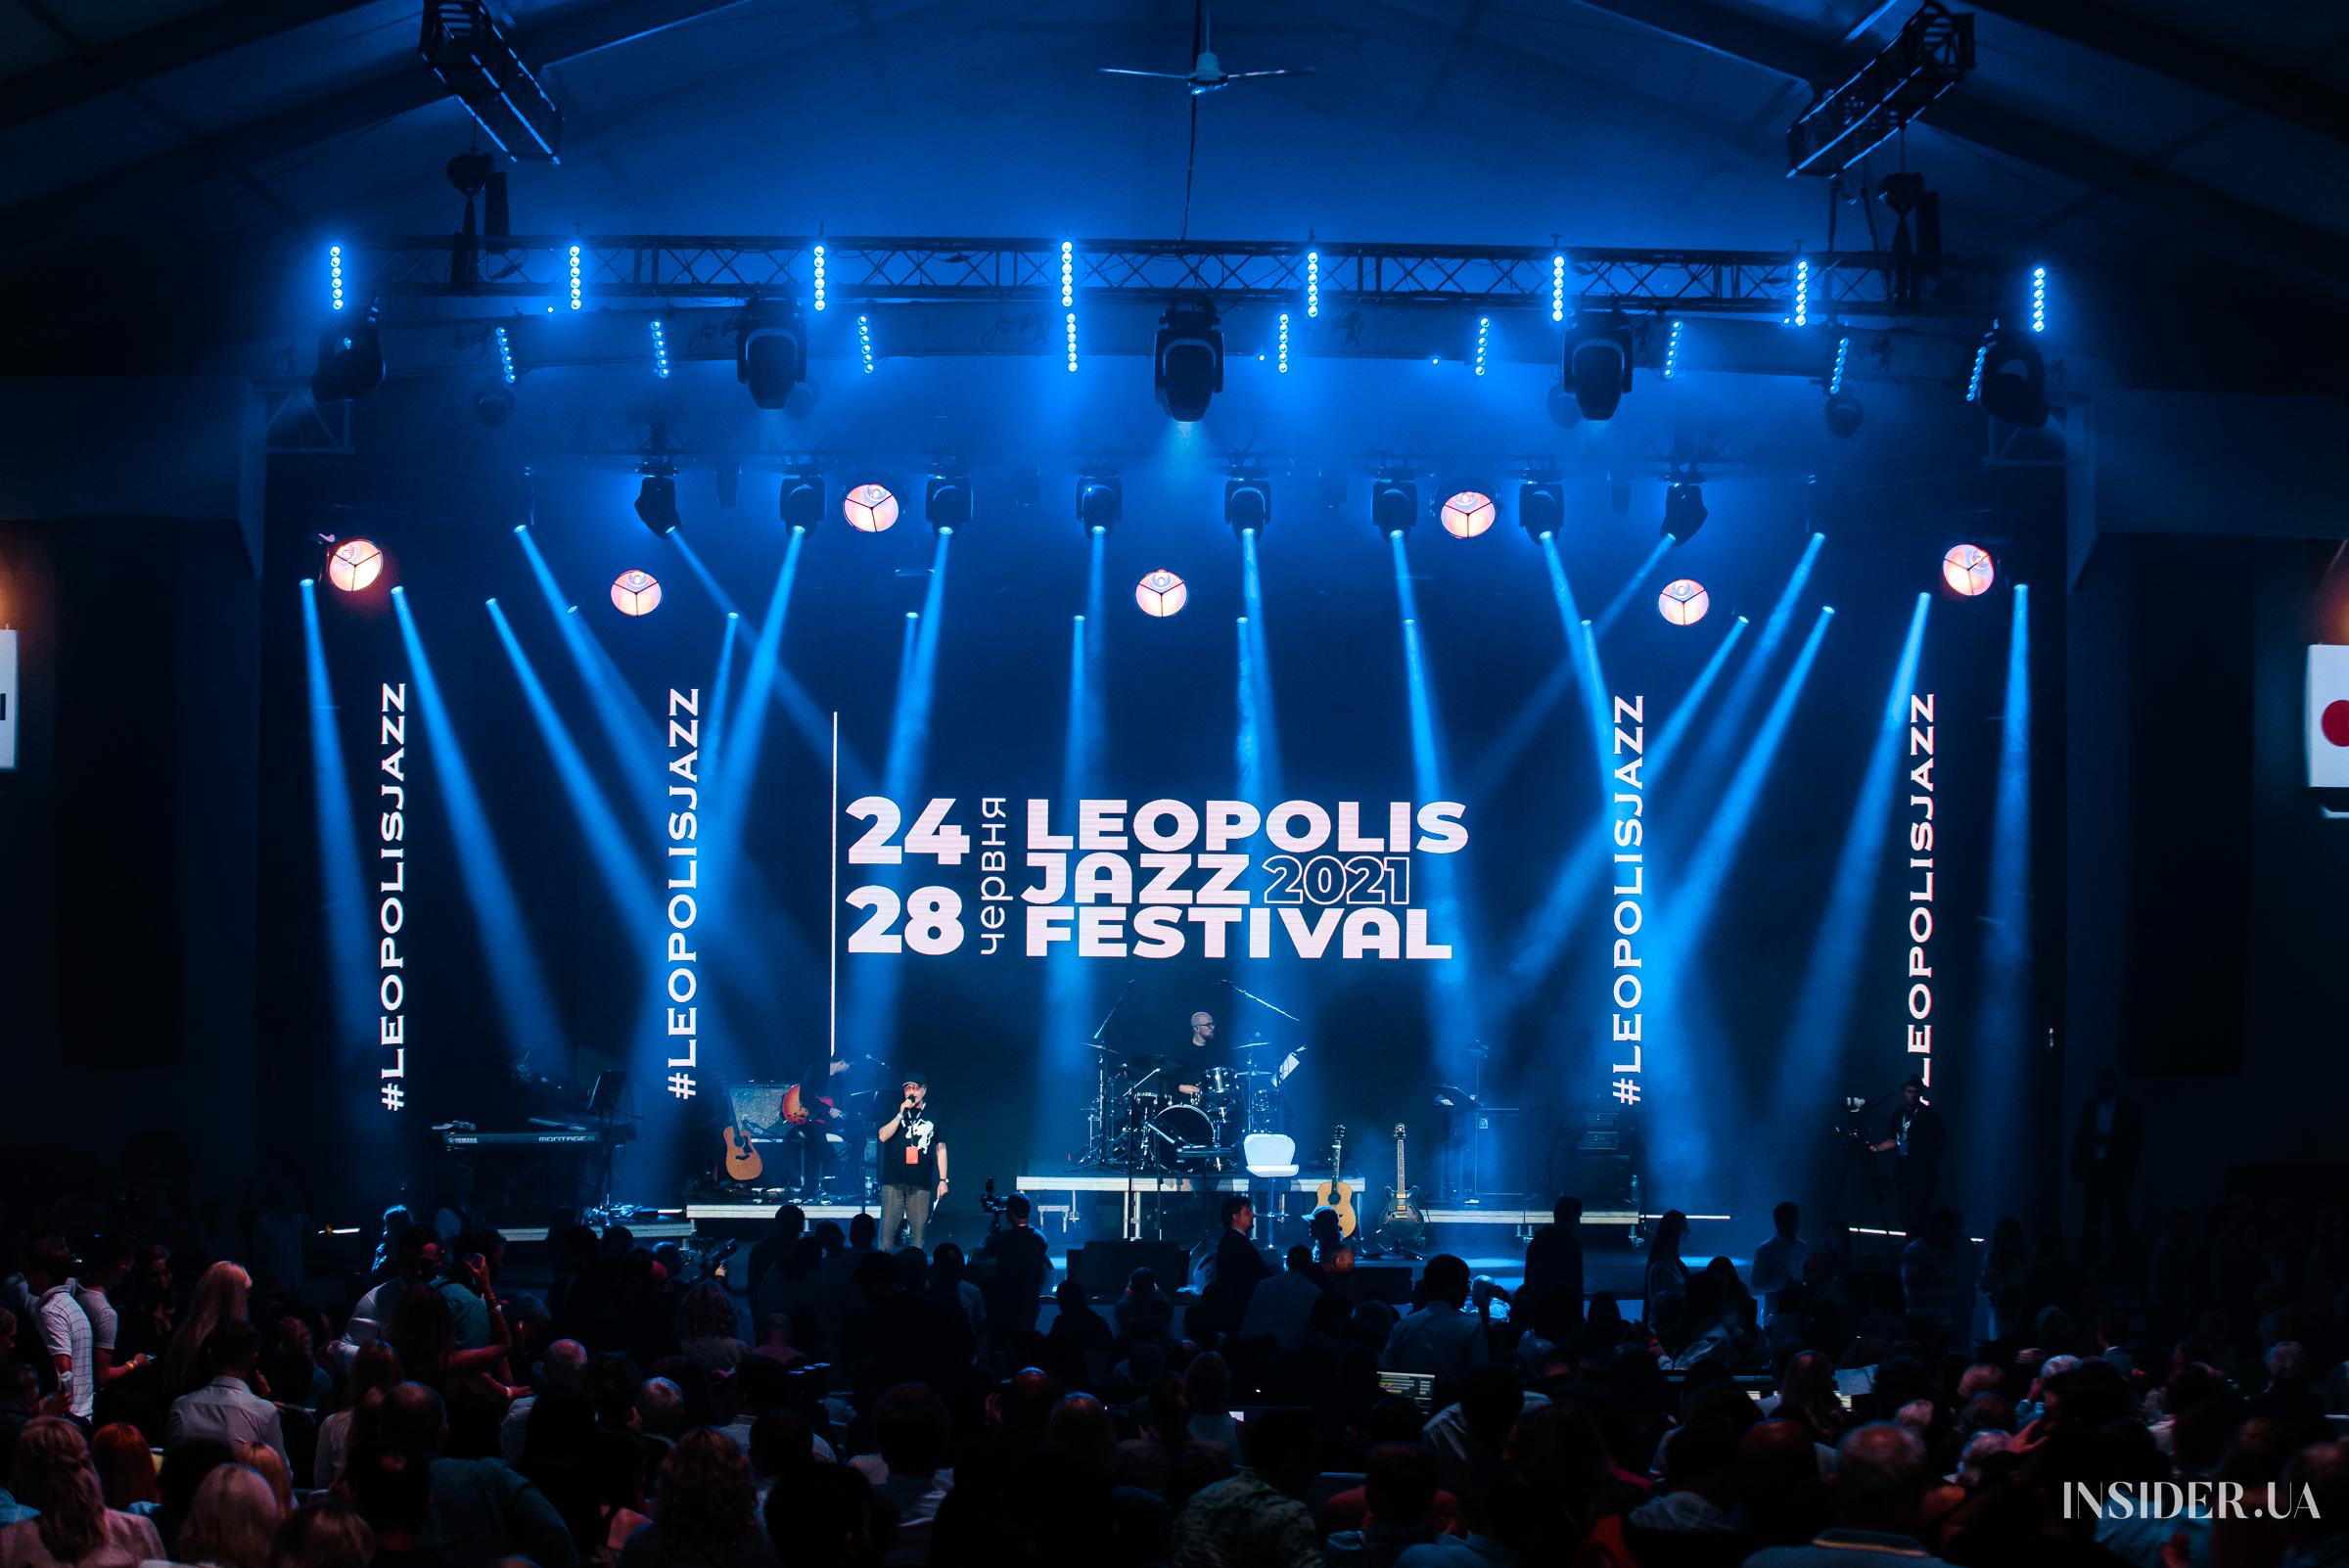 Звездные гости и неподражаемый SEAL: как прошел второй день фестиваля Leopolis Jazz Fest 2021